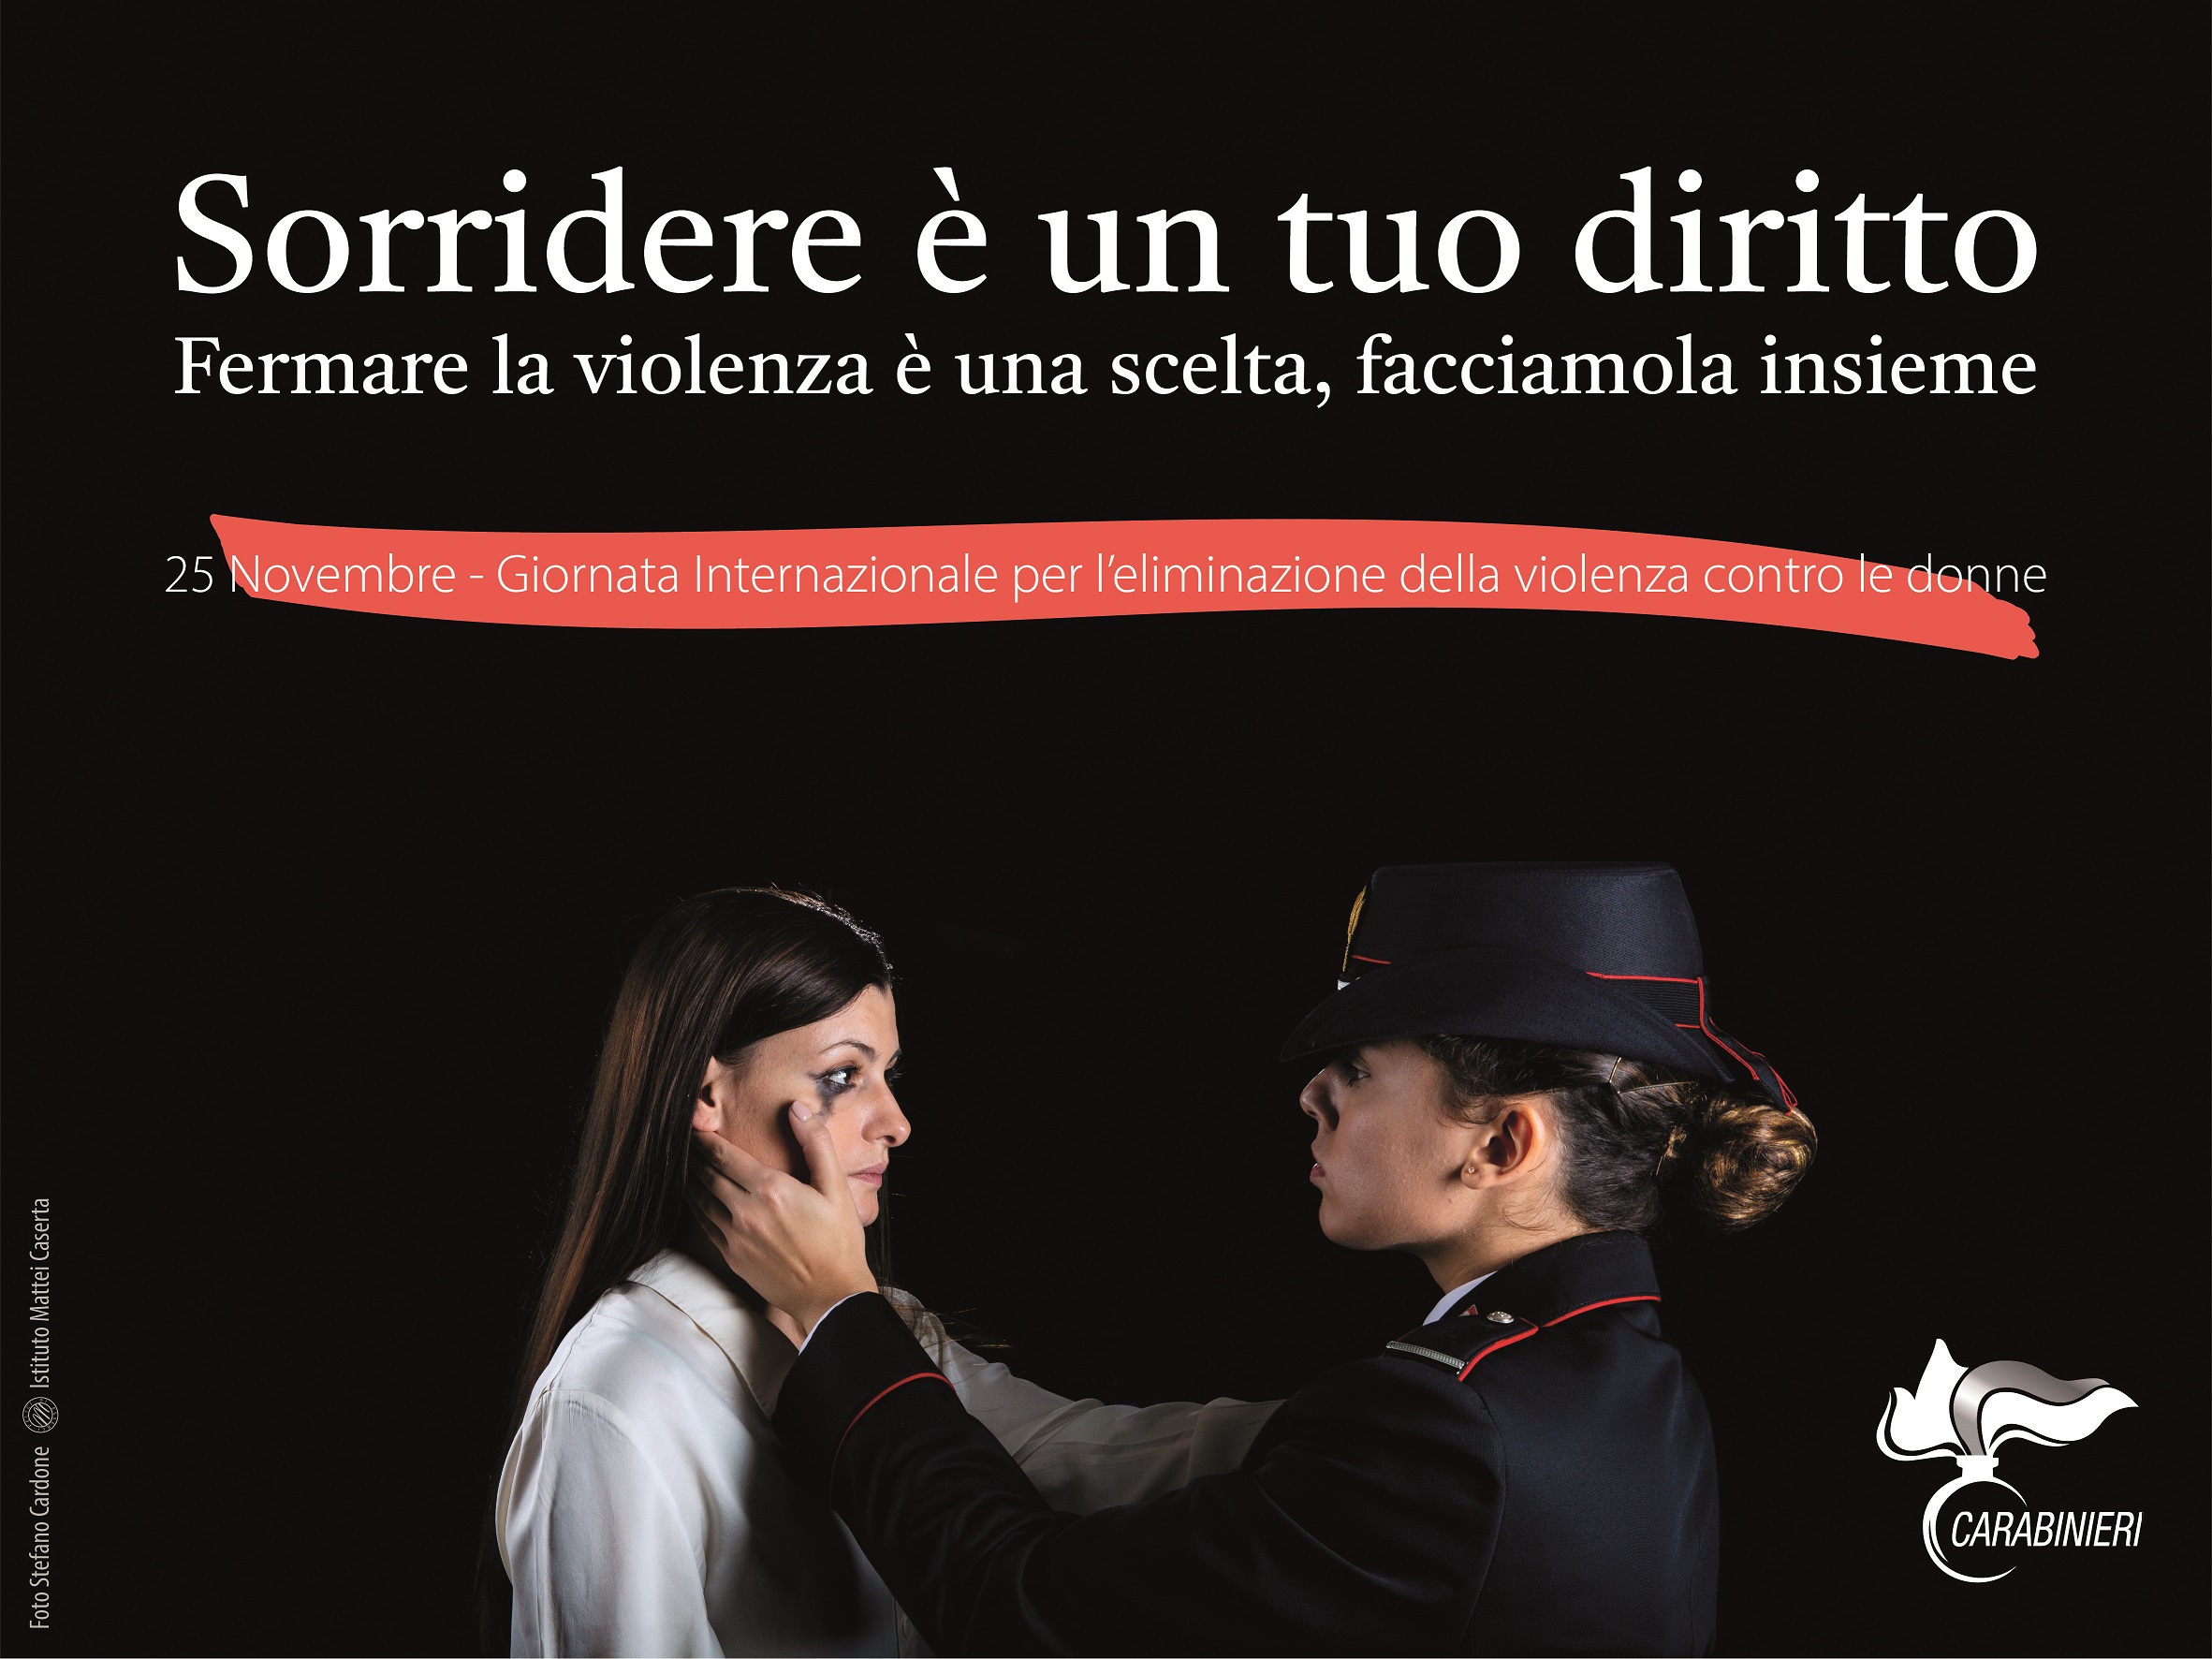 Avellino| Violenza contro le donne, l’appello dei carabinieri: trovare sempre il coraggio di denunciare